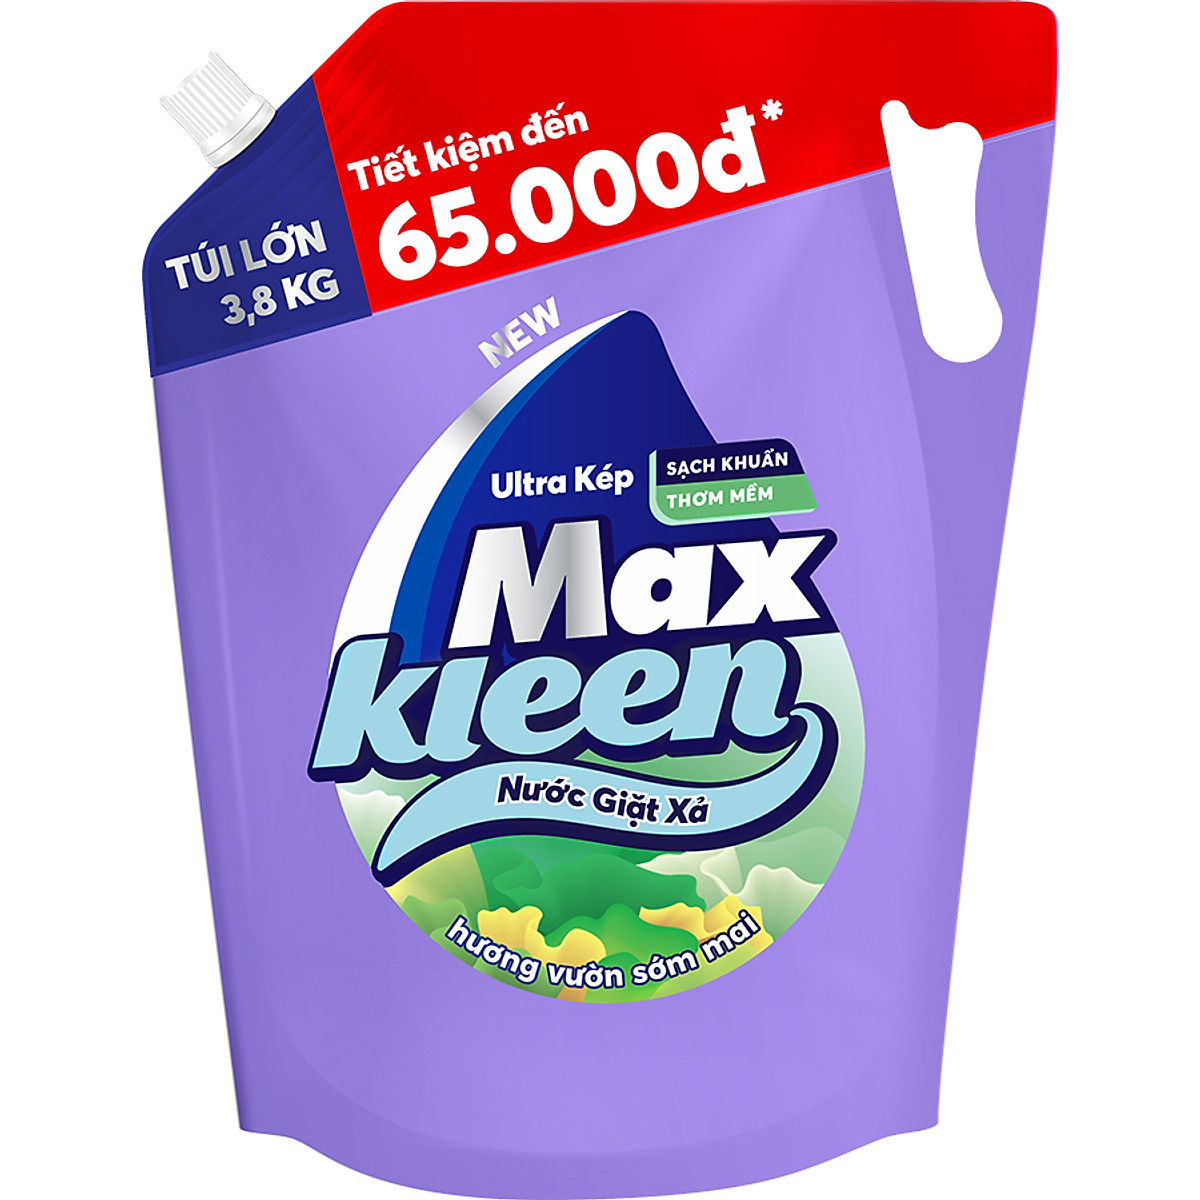 Túi Nước Giặt Xả Maxkleen Hương Vườn Sớm Mai (3.8kg)